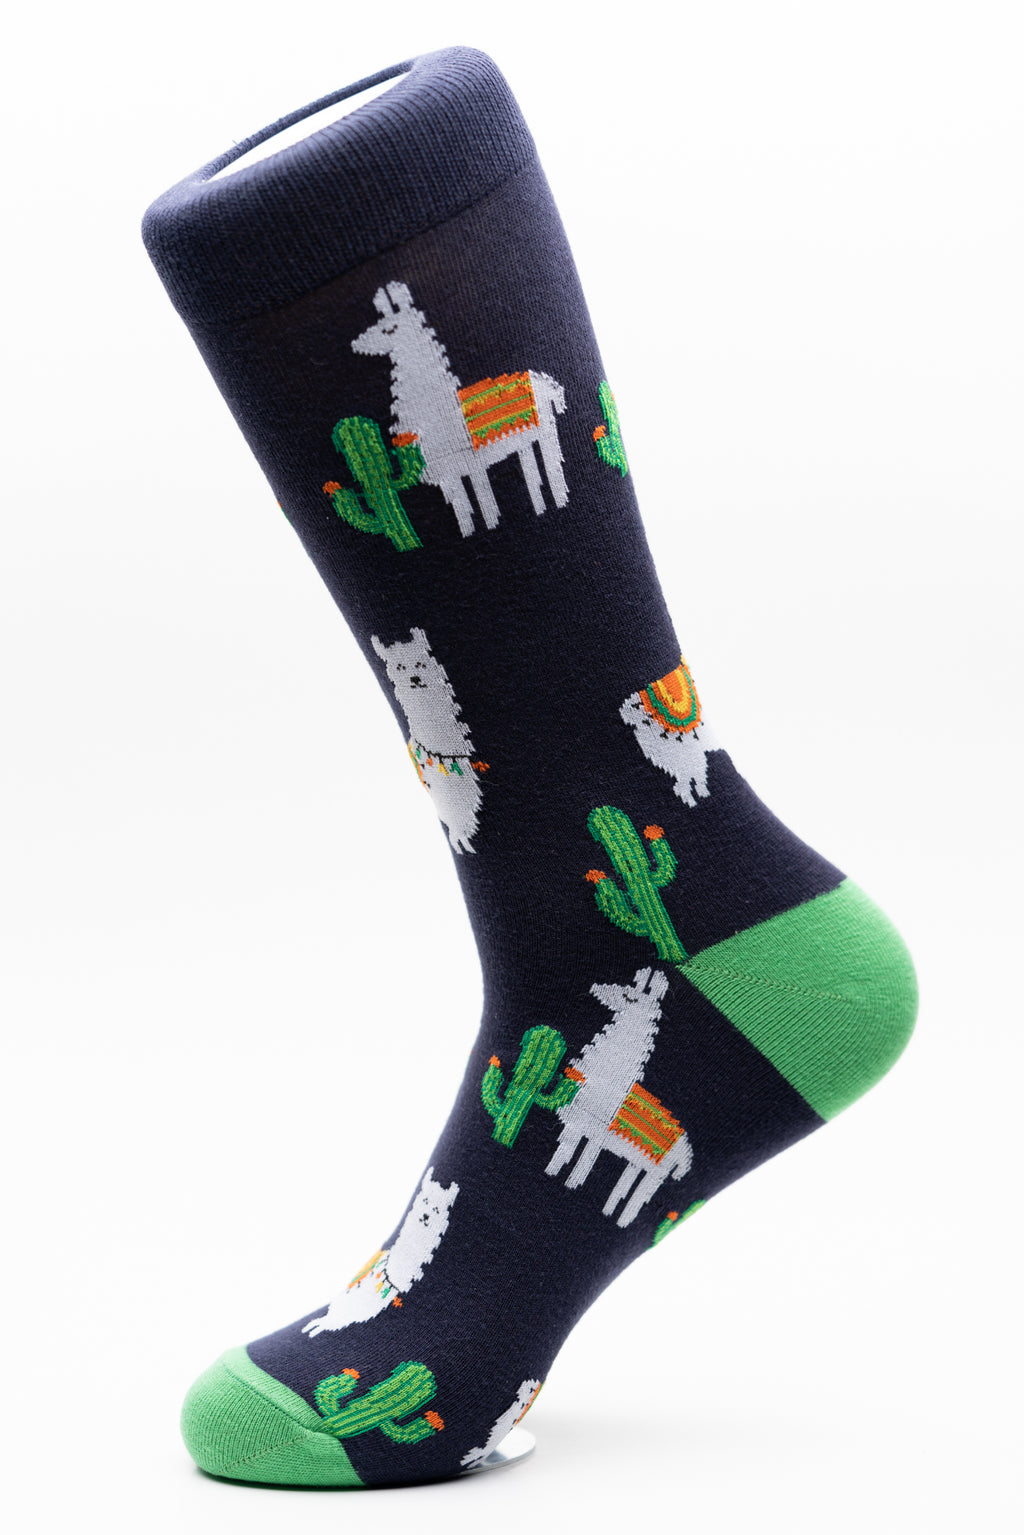 Llamas and cactus funky crew socks